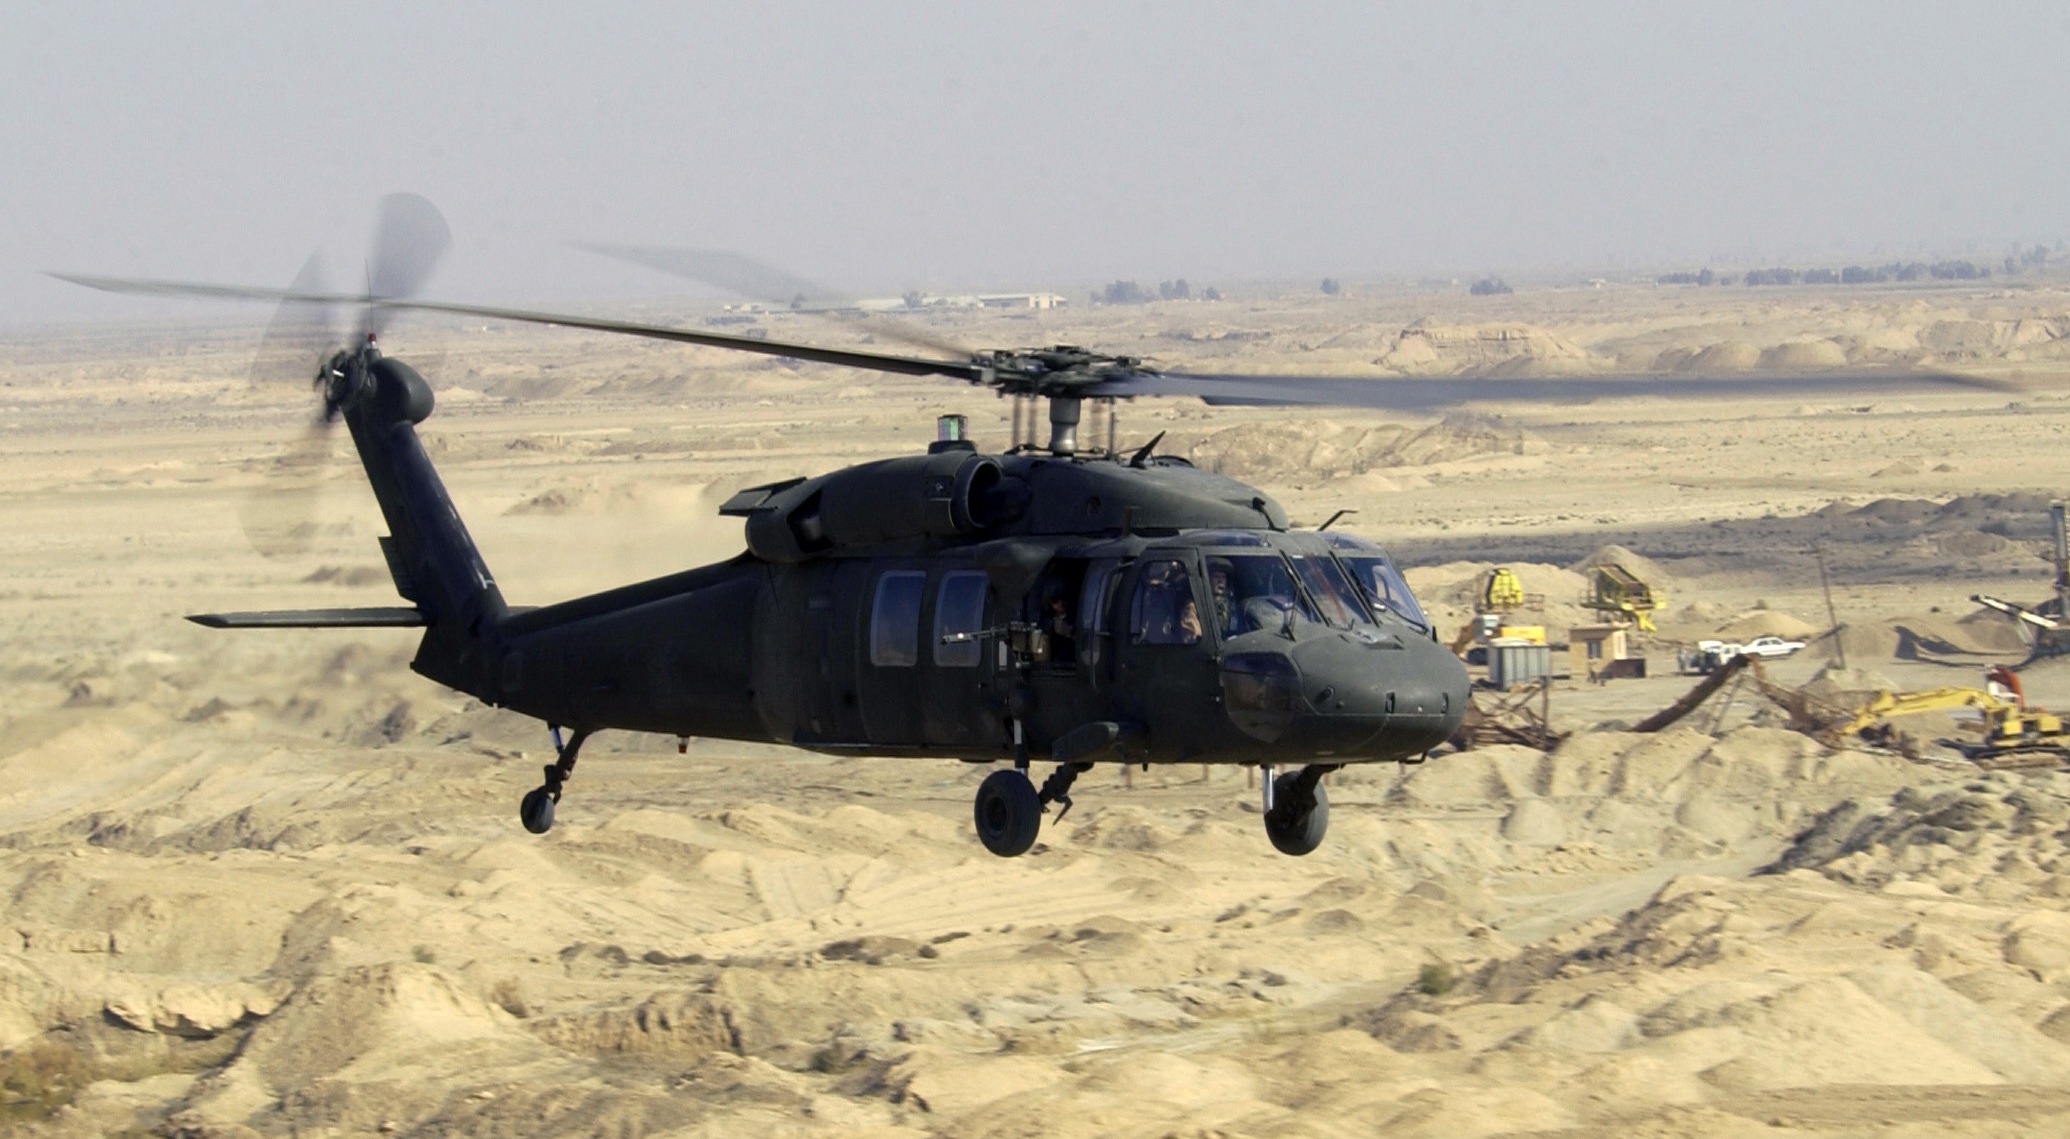 Sikorsky UH-60 Black Hawk HD wallpapers, Desktop wallpaper - most viewed